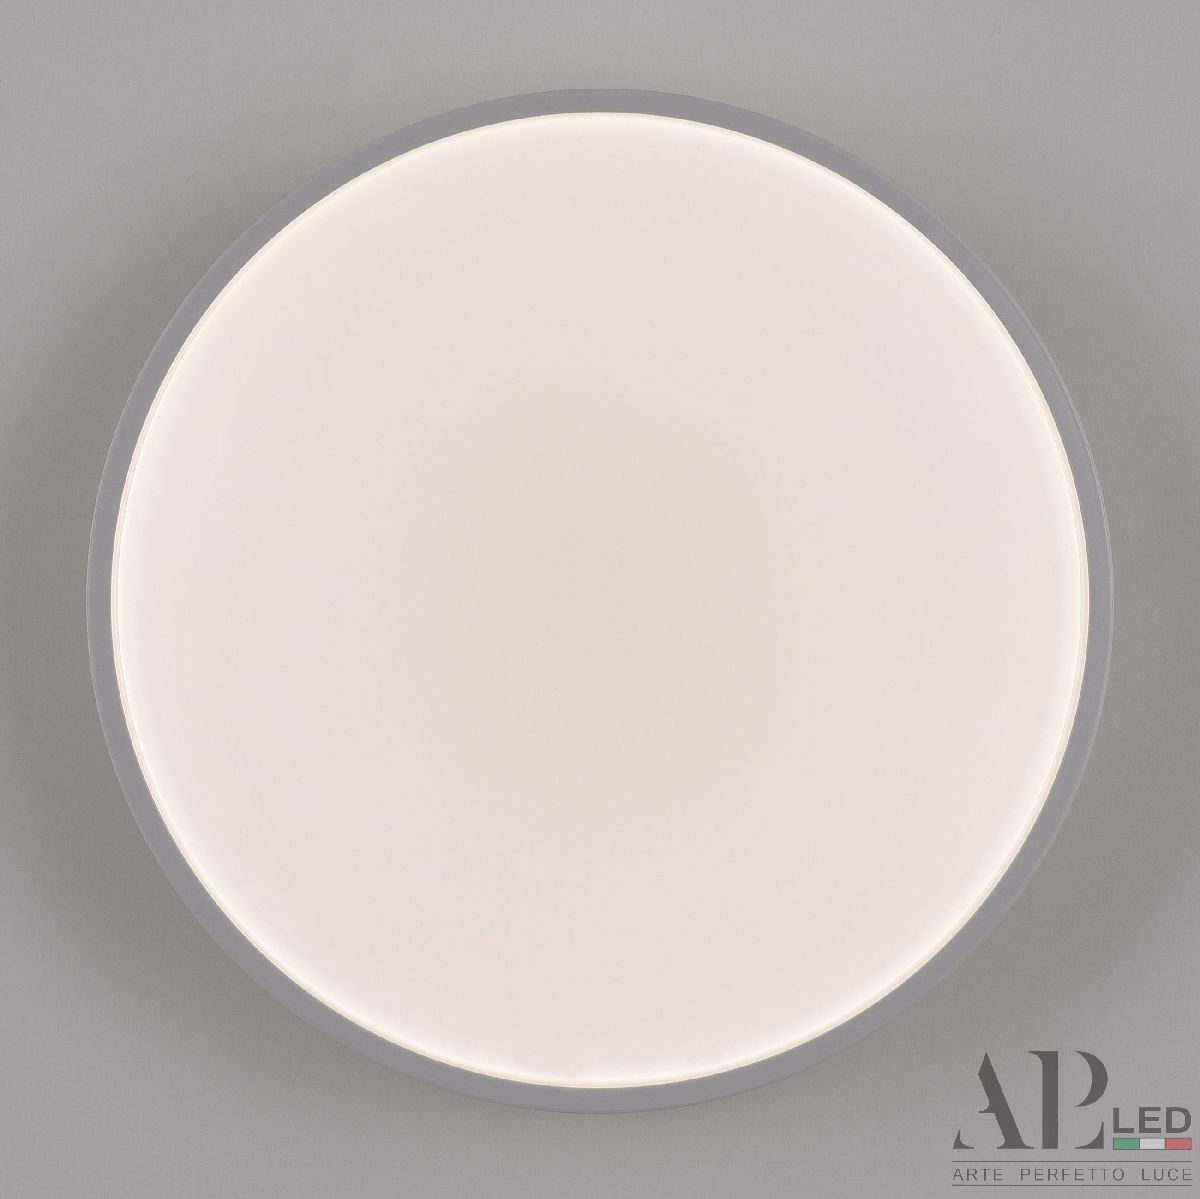 Потолочный светильник Arte Perfetto Luce Toscana PRO 3315.XM302-2-267/12W White TD